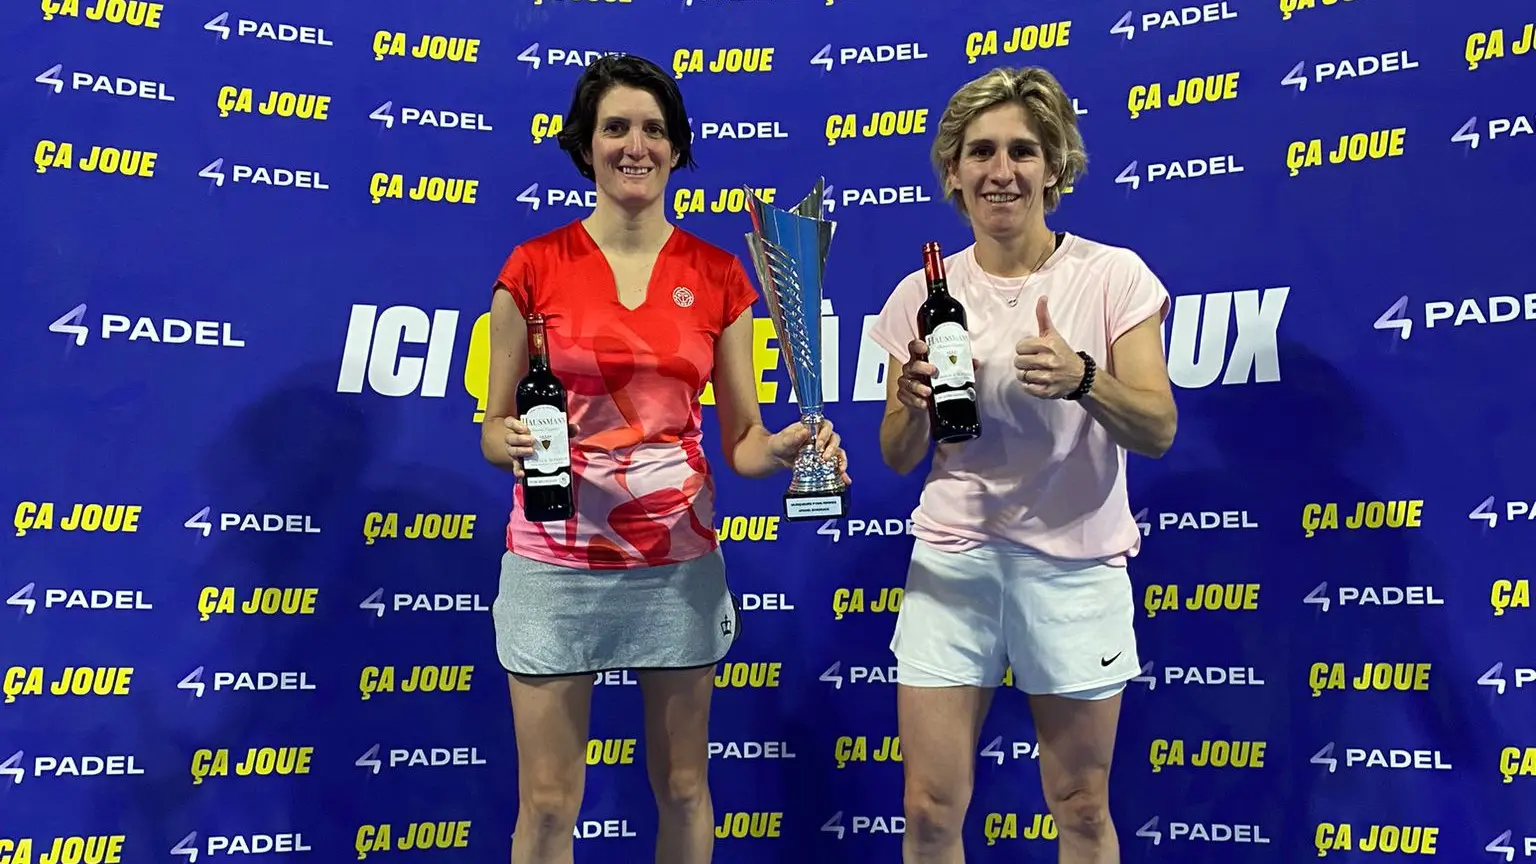 P1000 4Padel Bordeaux – Émilie Loit och Marie Lefevre trotsar alla förutsägelser och vinner titeln!